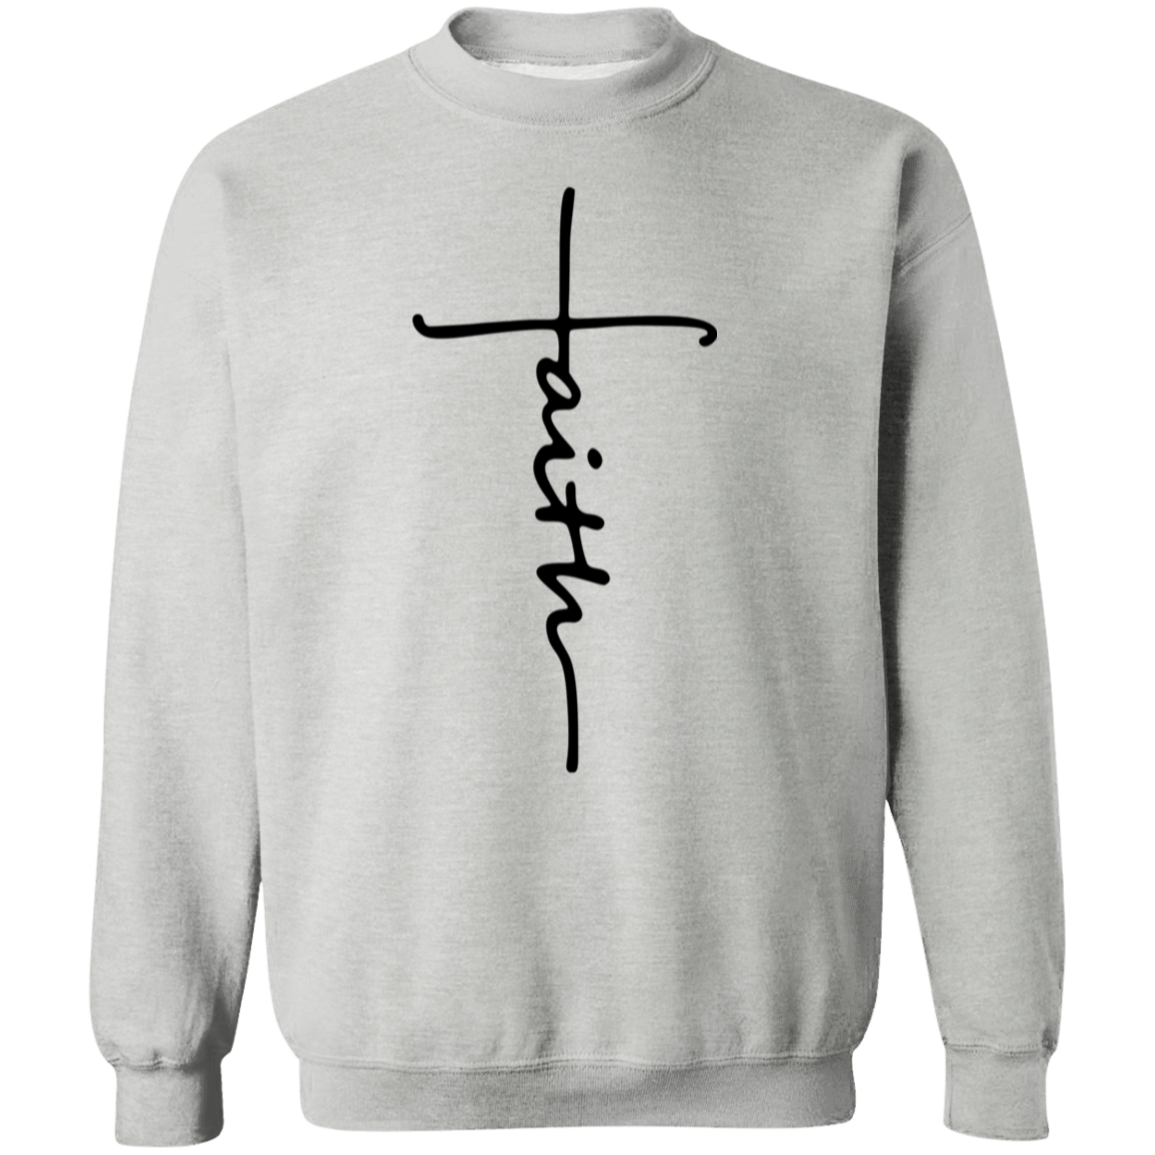 Faith Sweatshirt, Faith Cross Shirt, Christian Gift, Faith Gift, Christian Shirt, Love and Grace Shirt, Believe Shirt, Vertical Cross